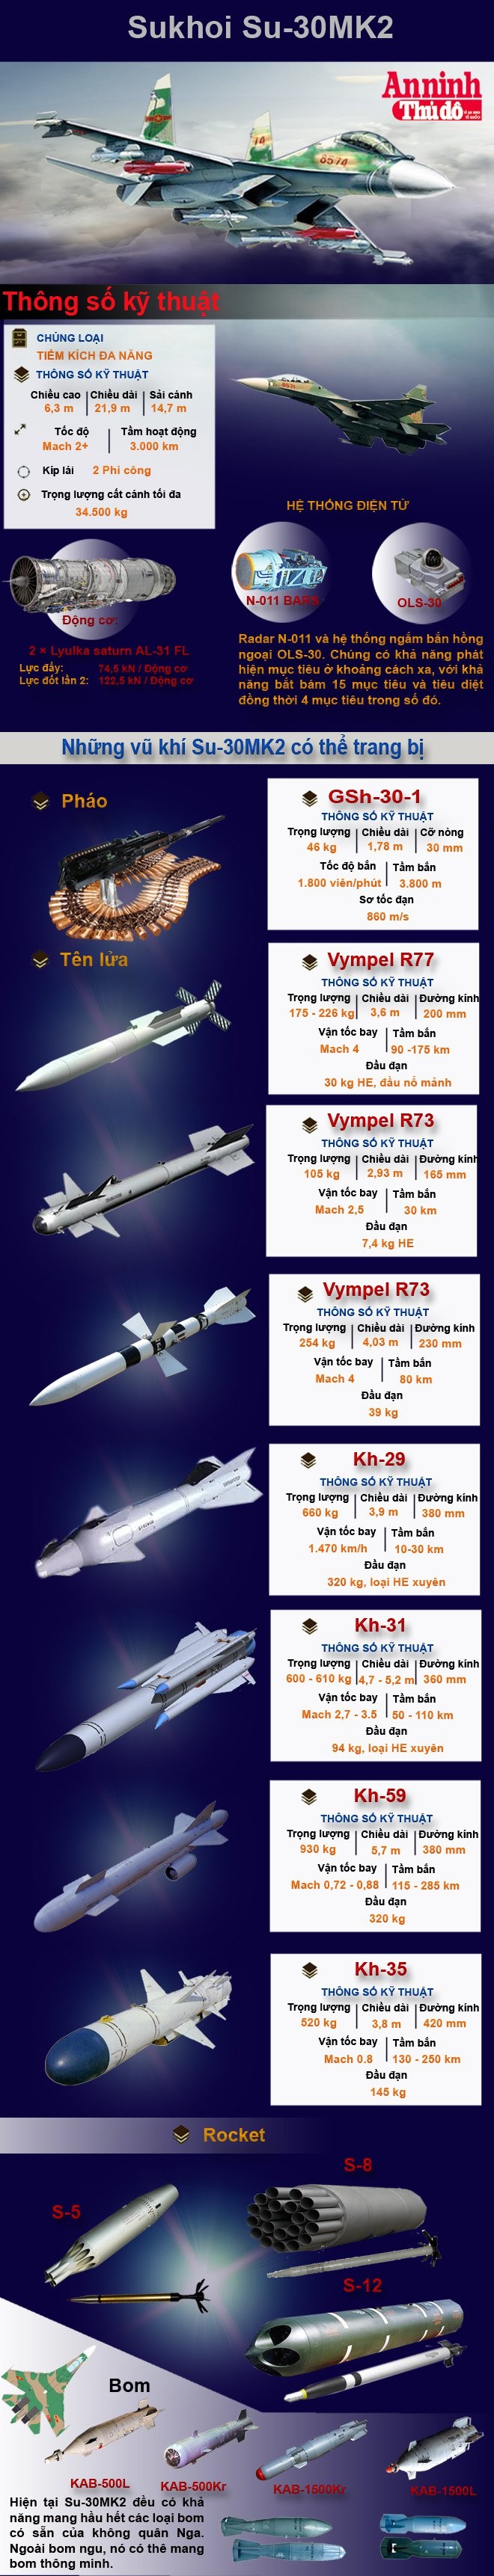 [Infographic] Kho vũ khí khủng khiếp của Sukhoi Su-30MK2